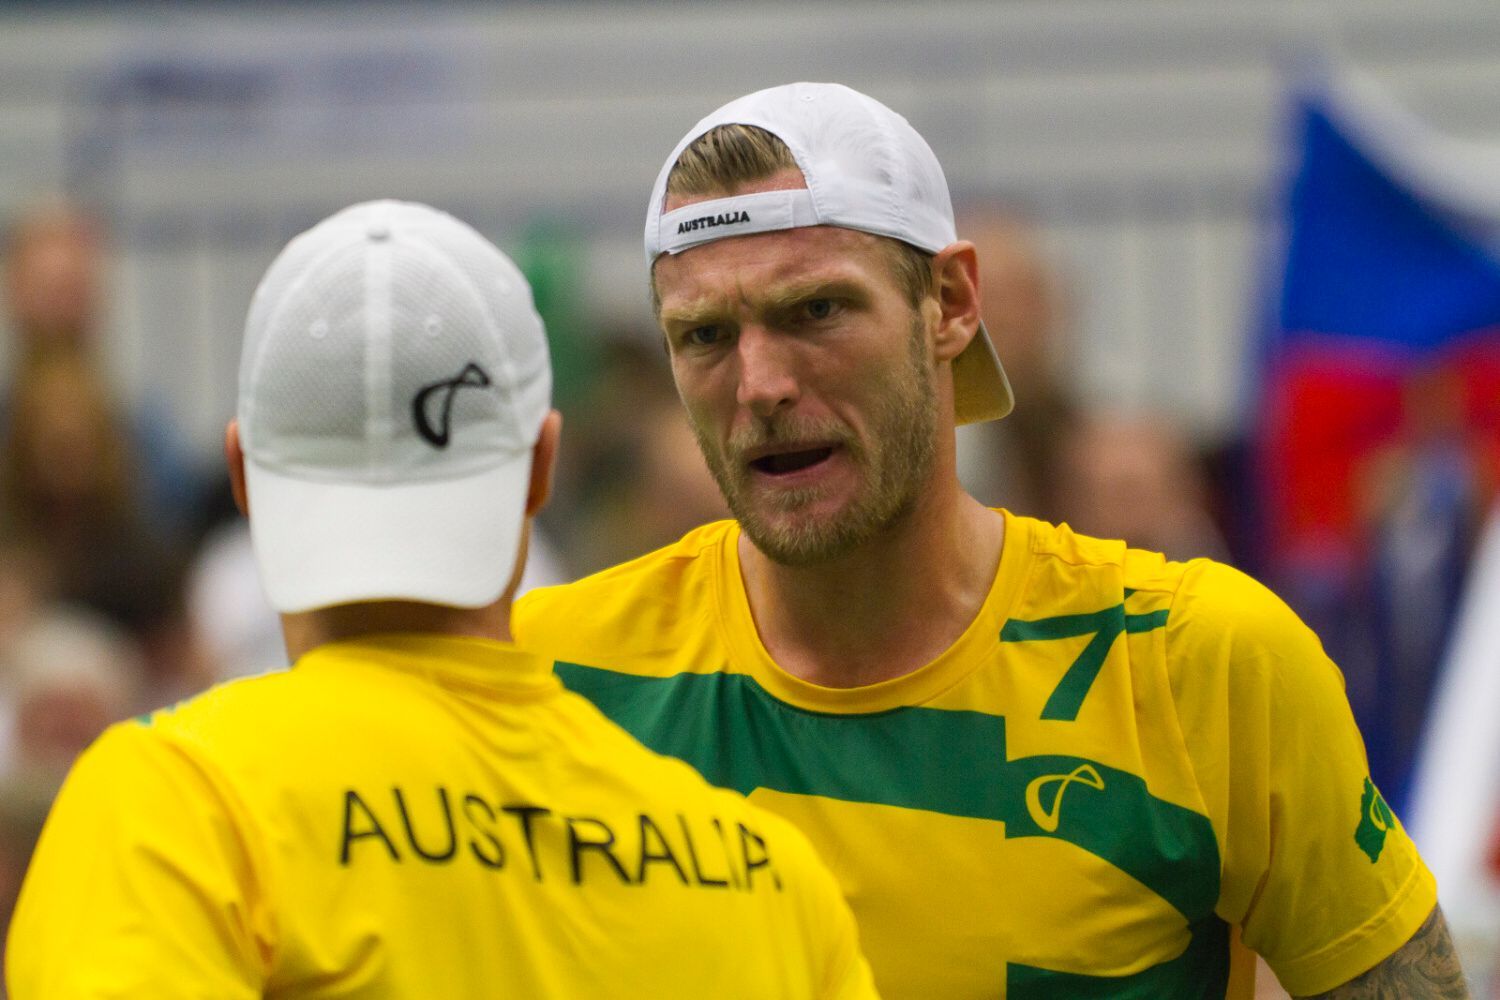 Davis Cup, ČR-Austrálie: Samuel Groth a Lleyton Hewitt